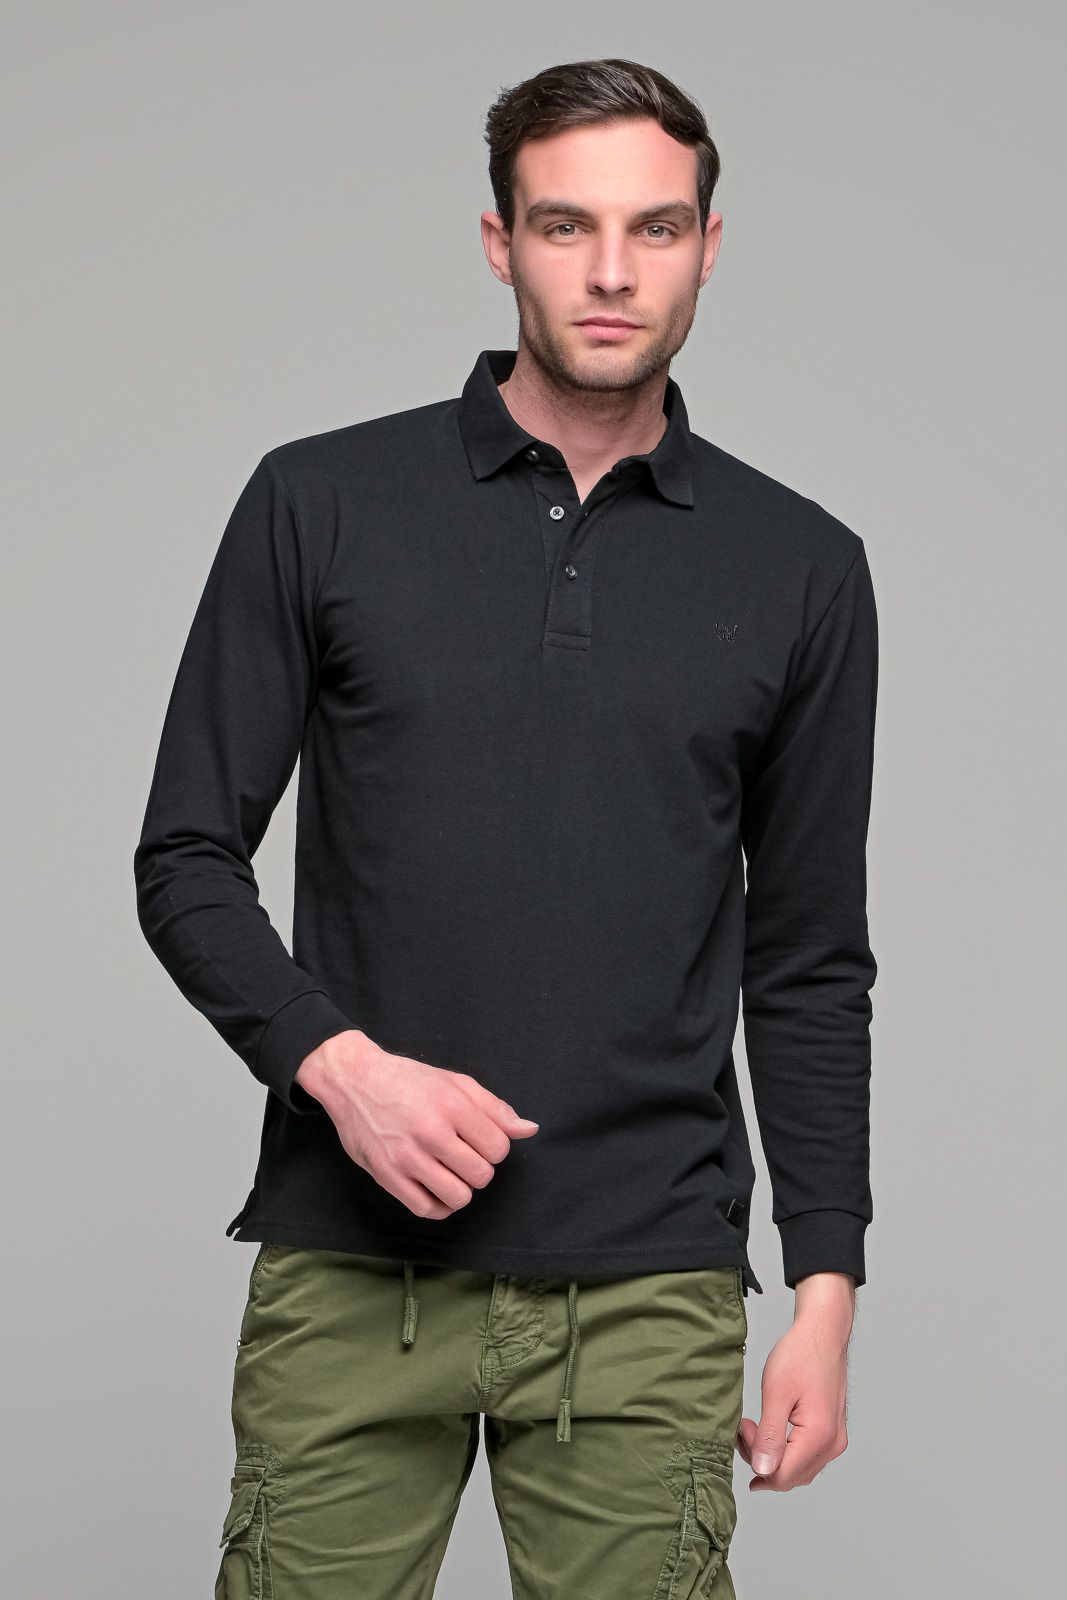 Μαύρο βαμβακερό ανδρικό πόλο μπλουζάκι FR μακρυμάνικο - Regular fit